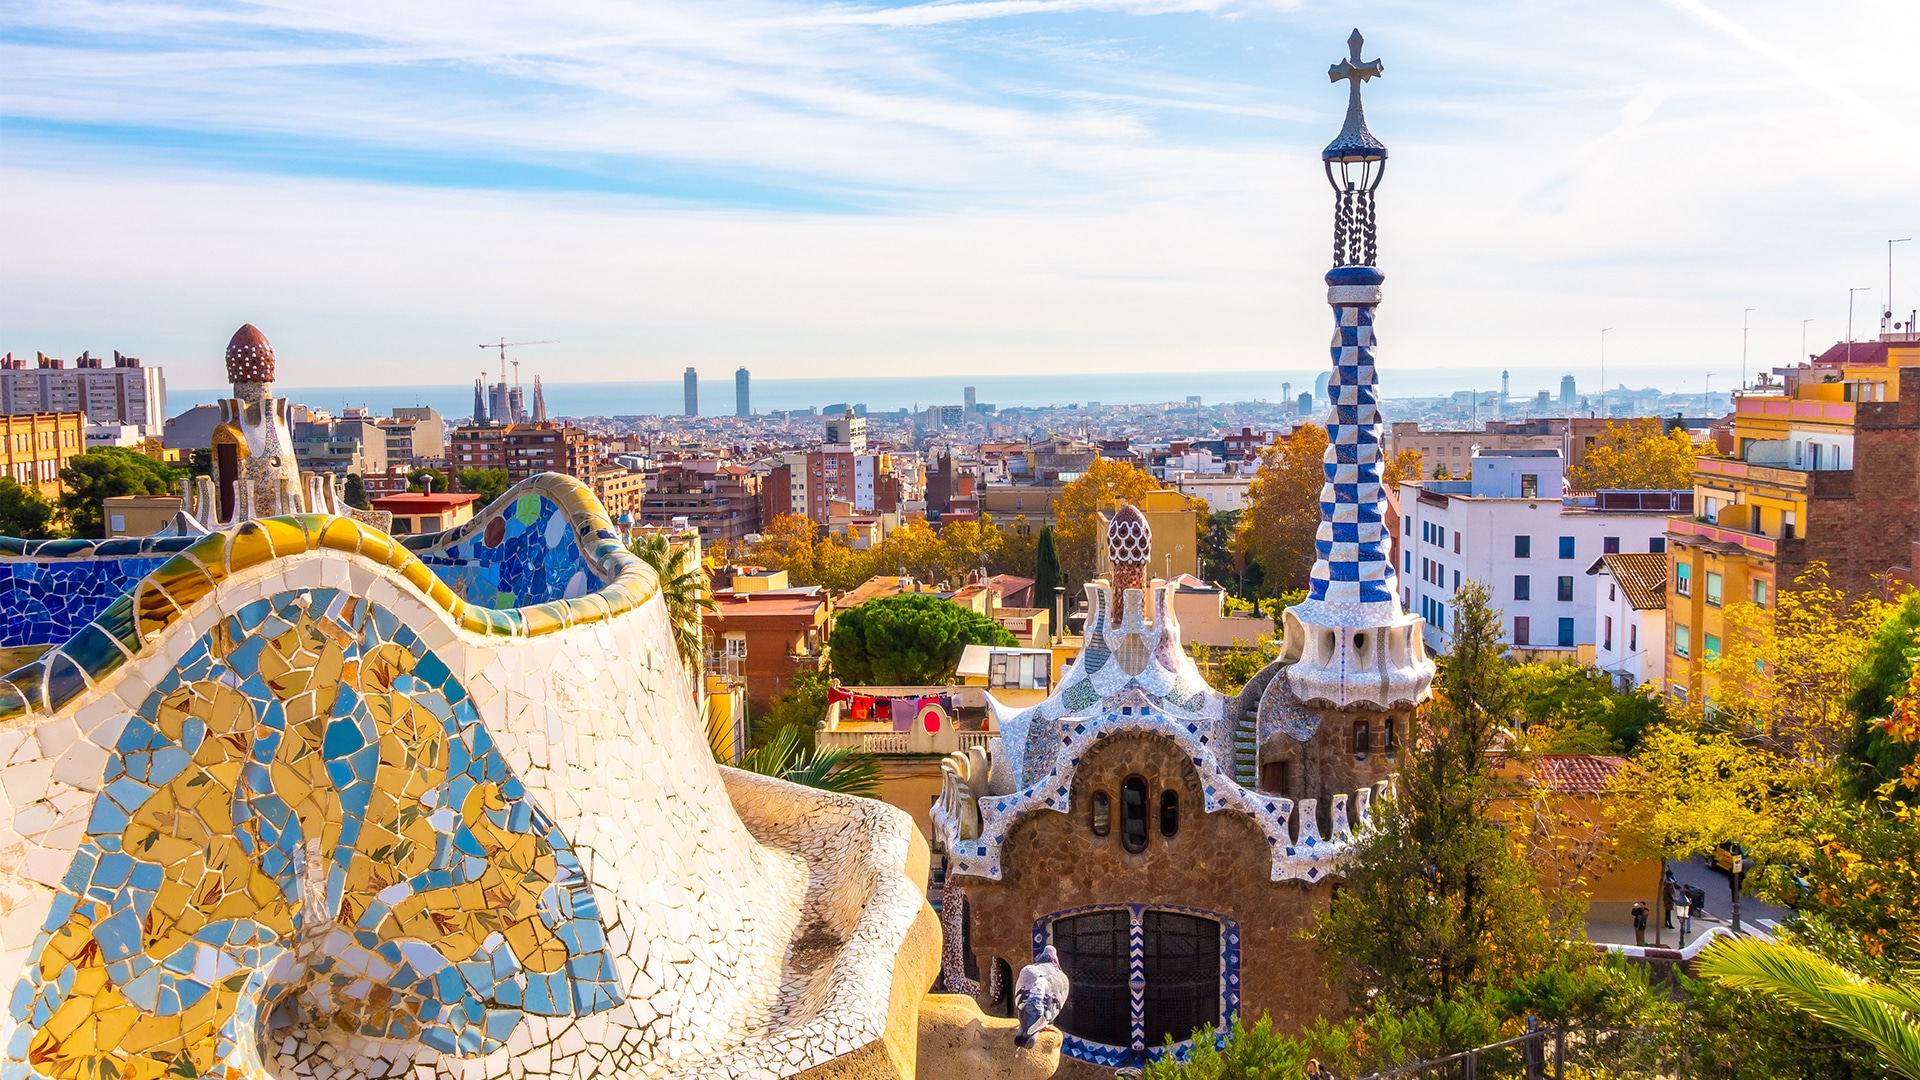 Parc Guell und die Stadt Barcelona im Hintergrund